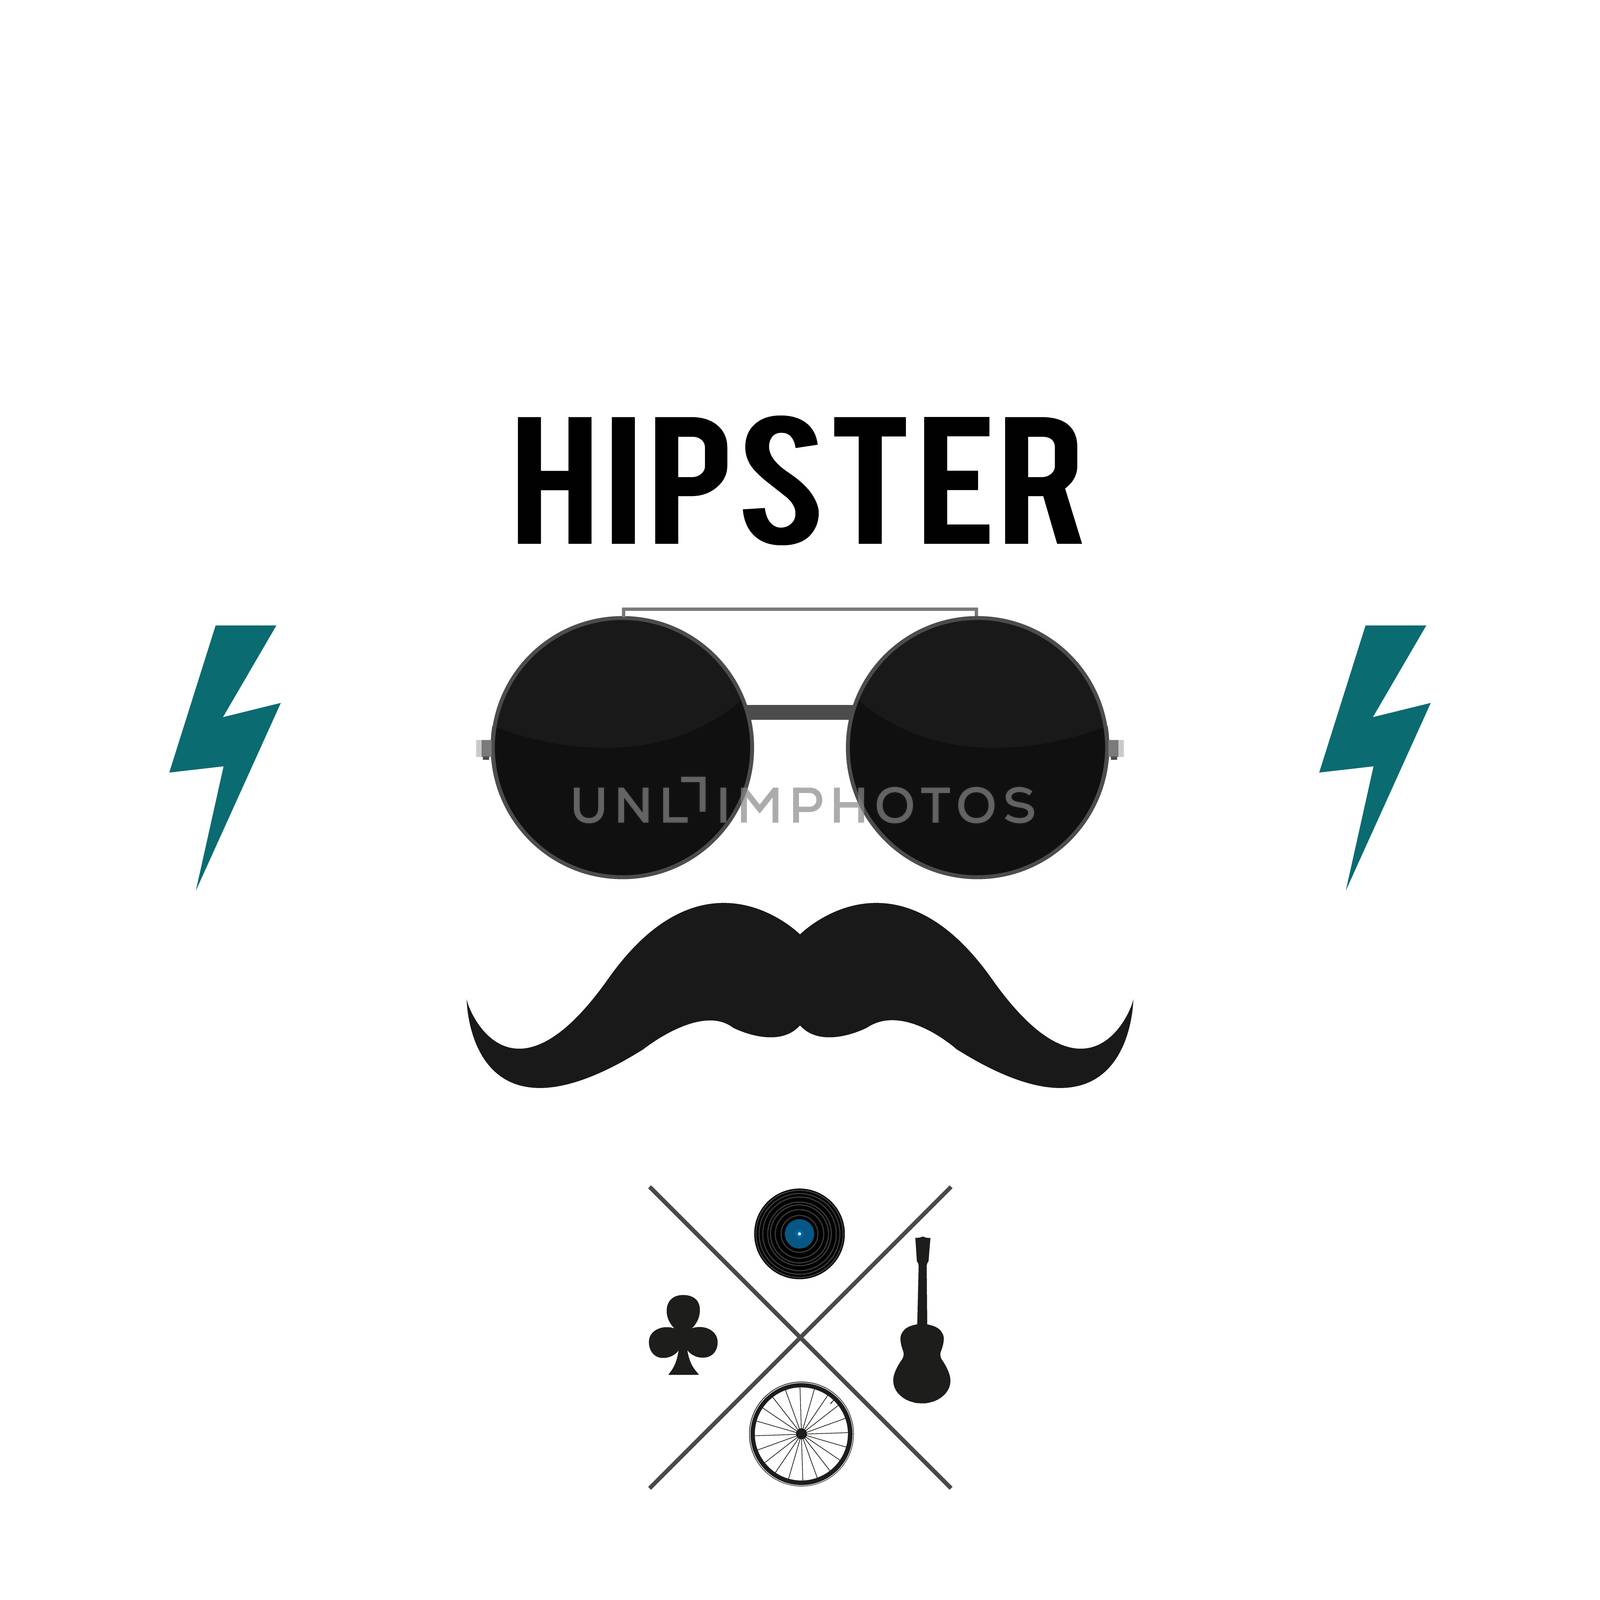 Be Hipster by landscafe